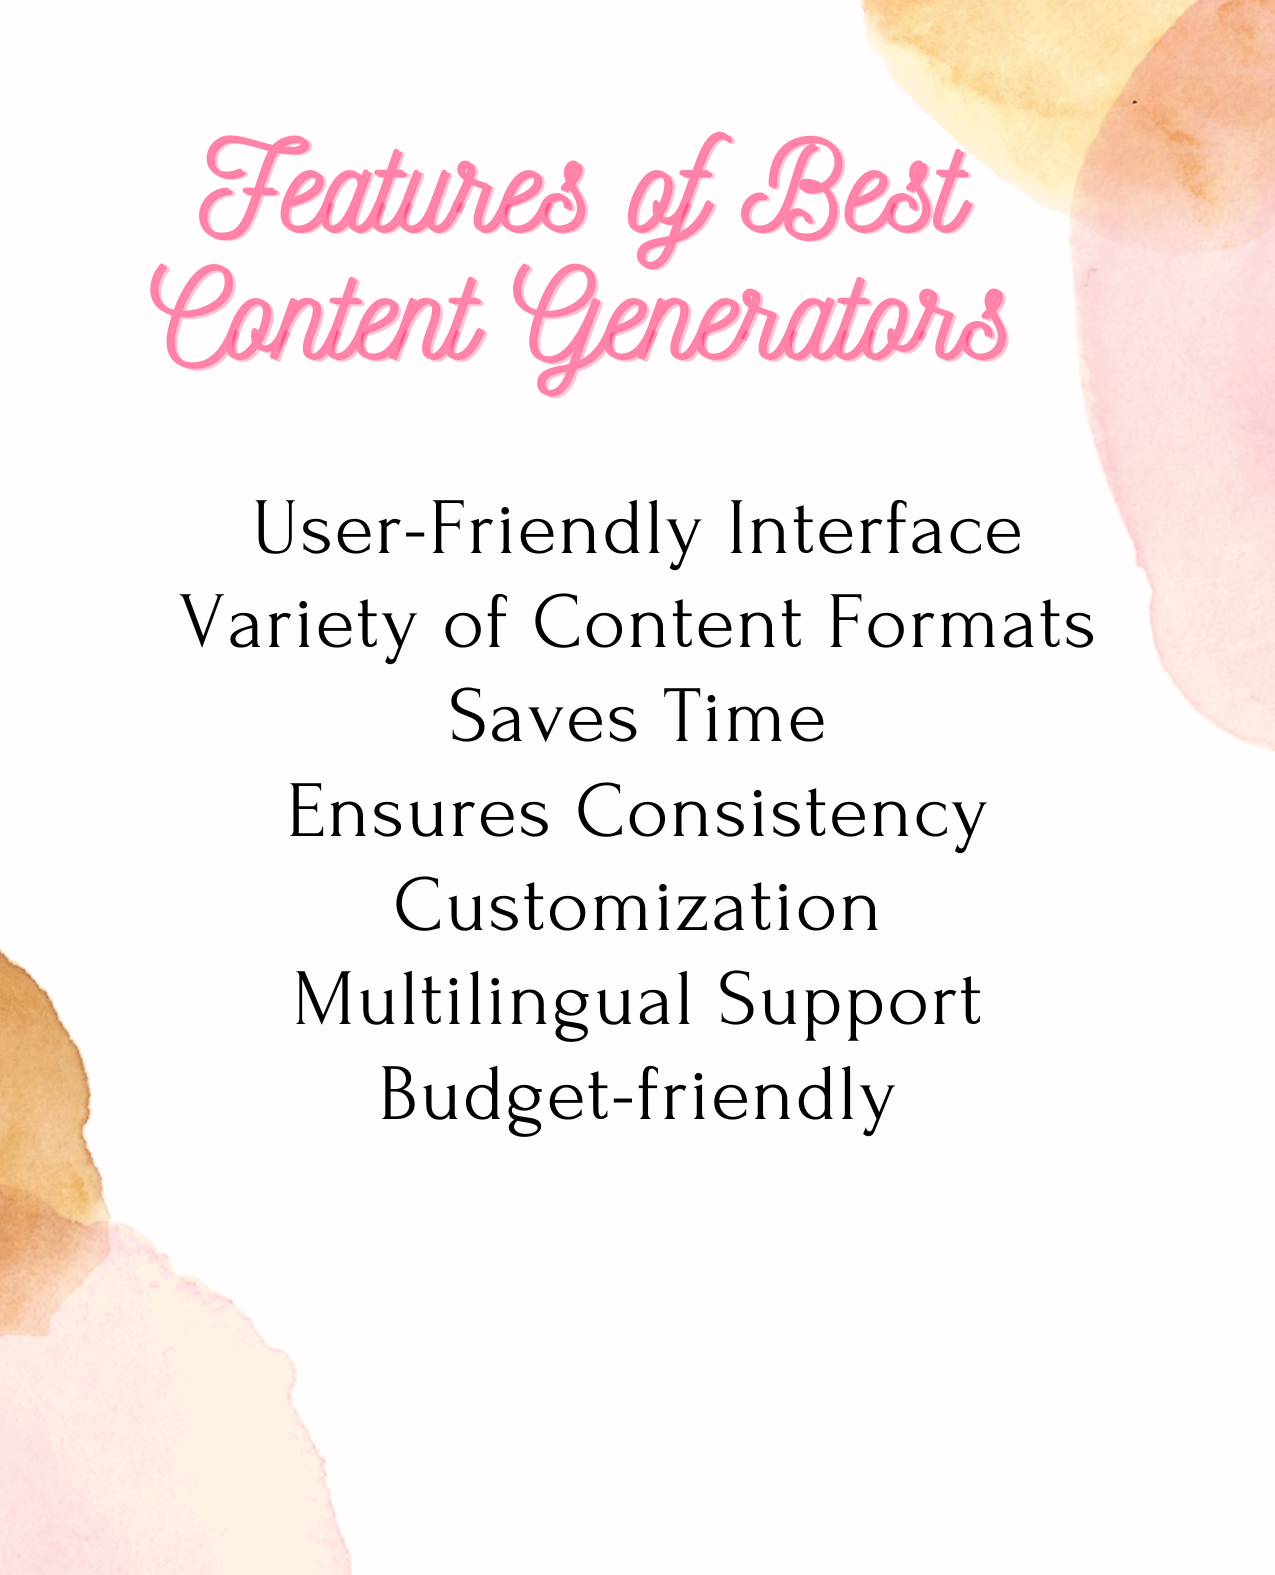 Features of Best Content Generators